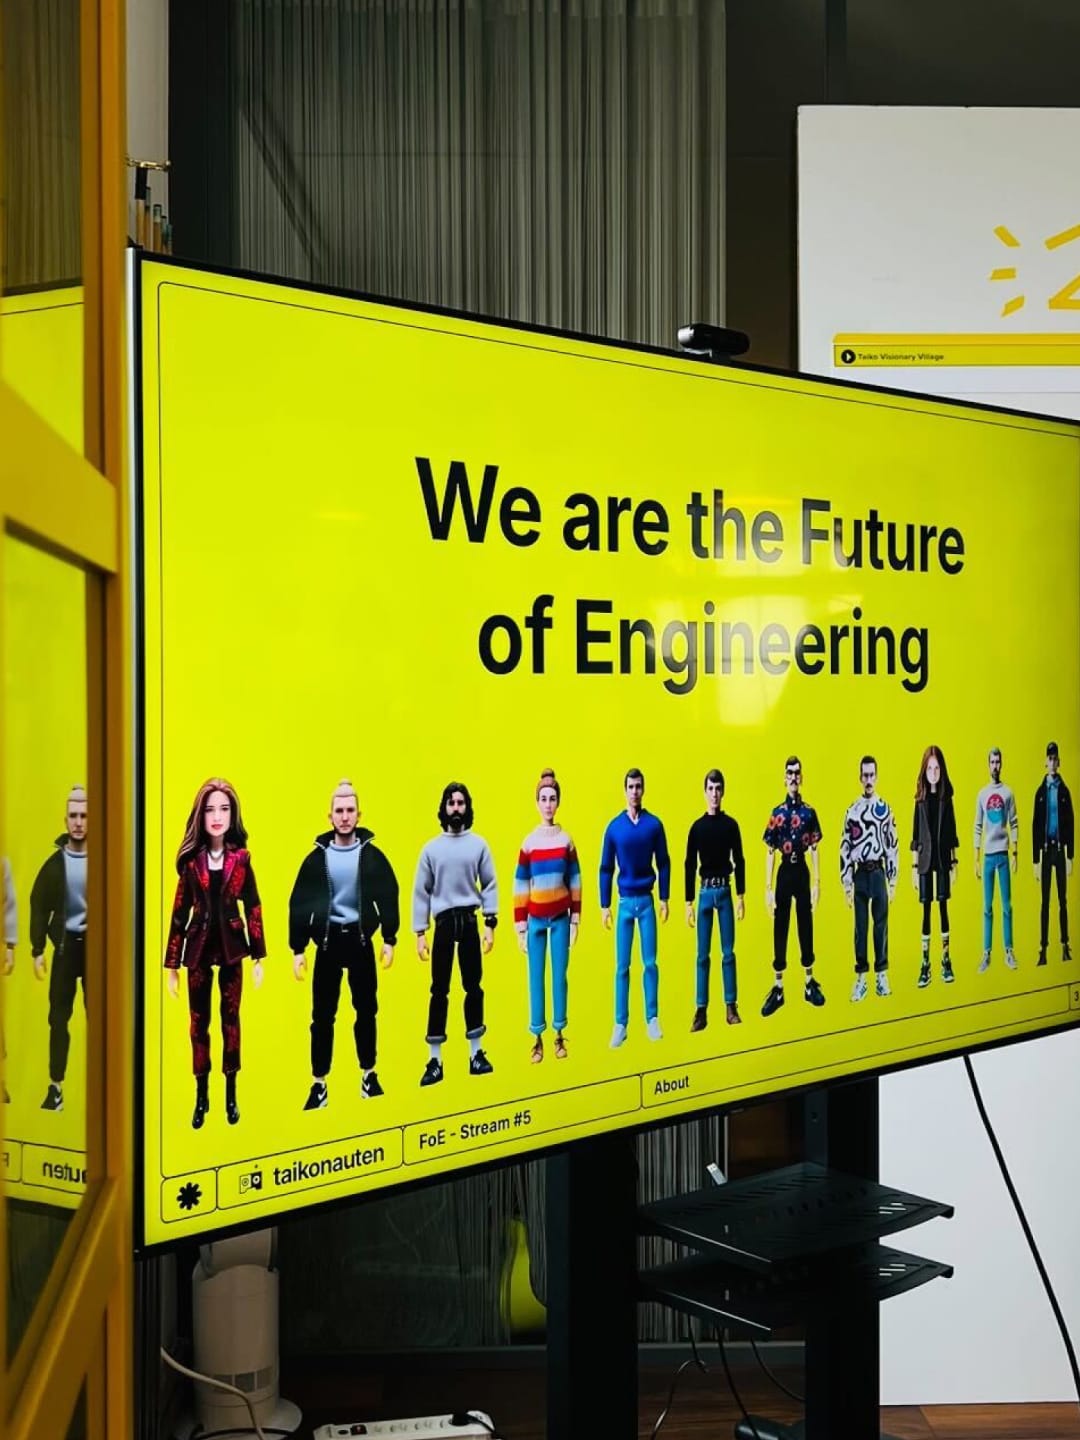 Ein großer Bildschirm zeigt eine gelbe Folie mit dem Titel "We are the Future of Engineering".